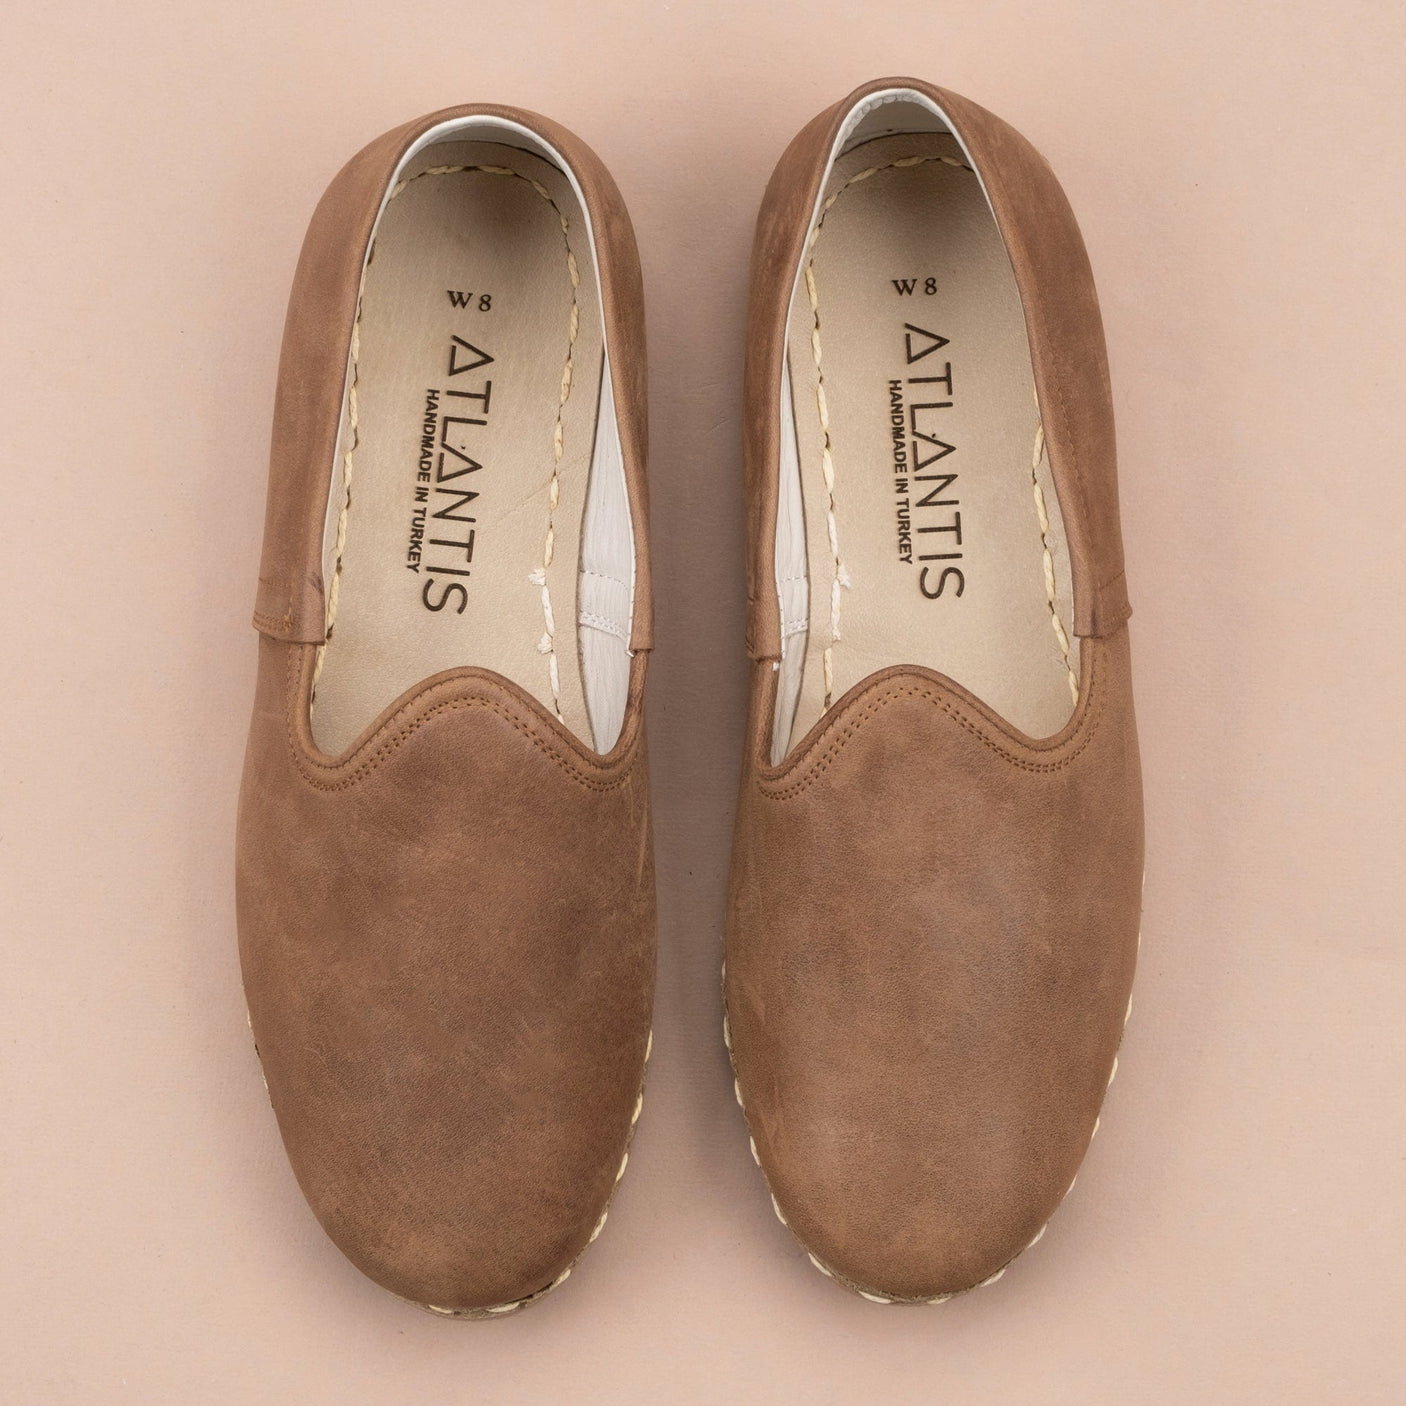 Zaragoza-Slip-On-Schuhe für Damen